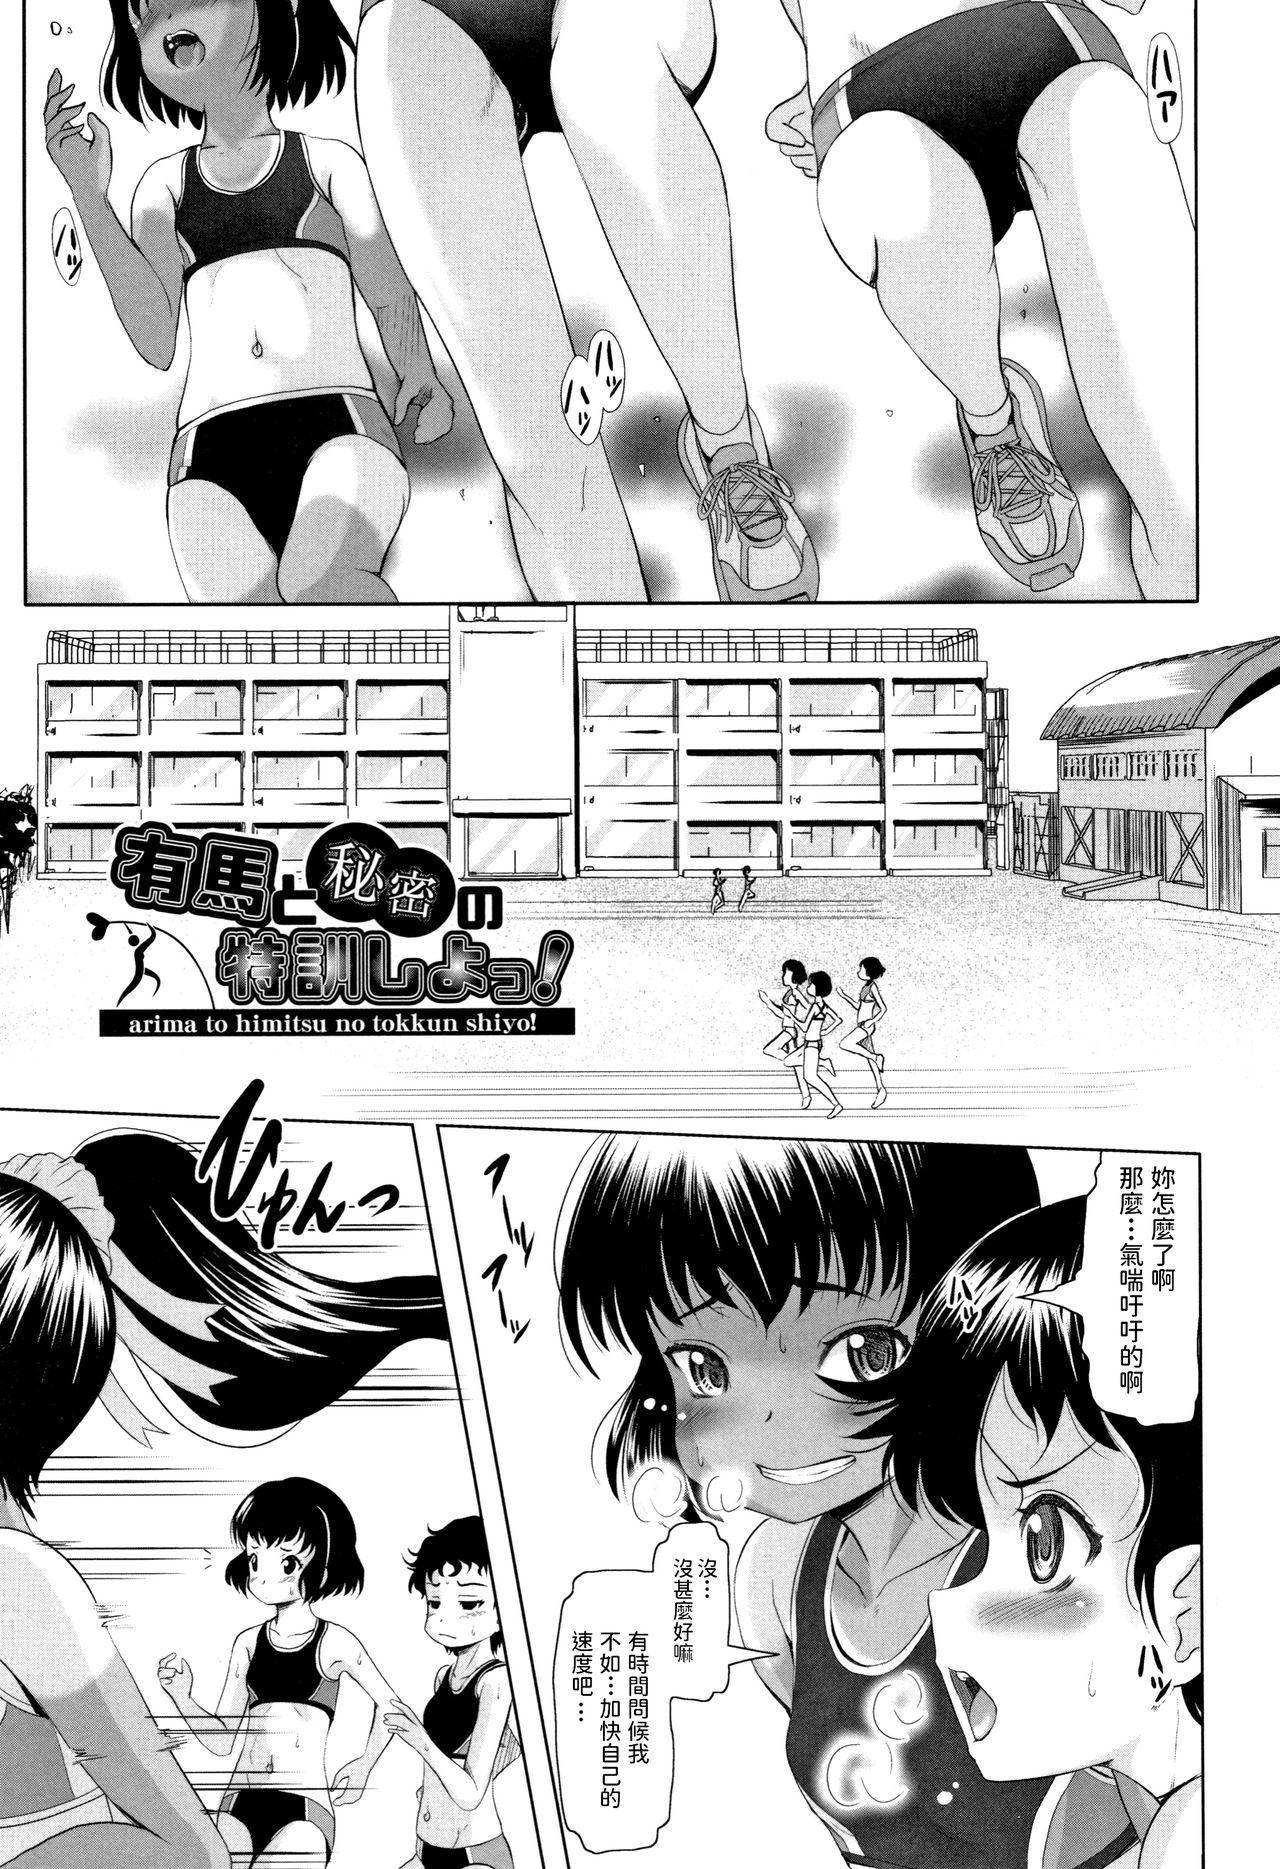 Chibola Arima to Himitsu no Tokkun Shiyo! Spandex - Page 1